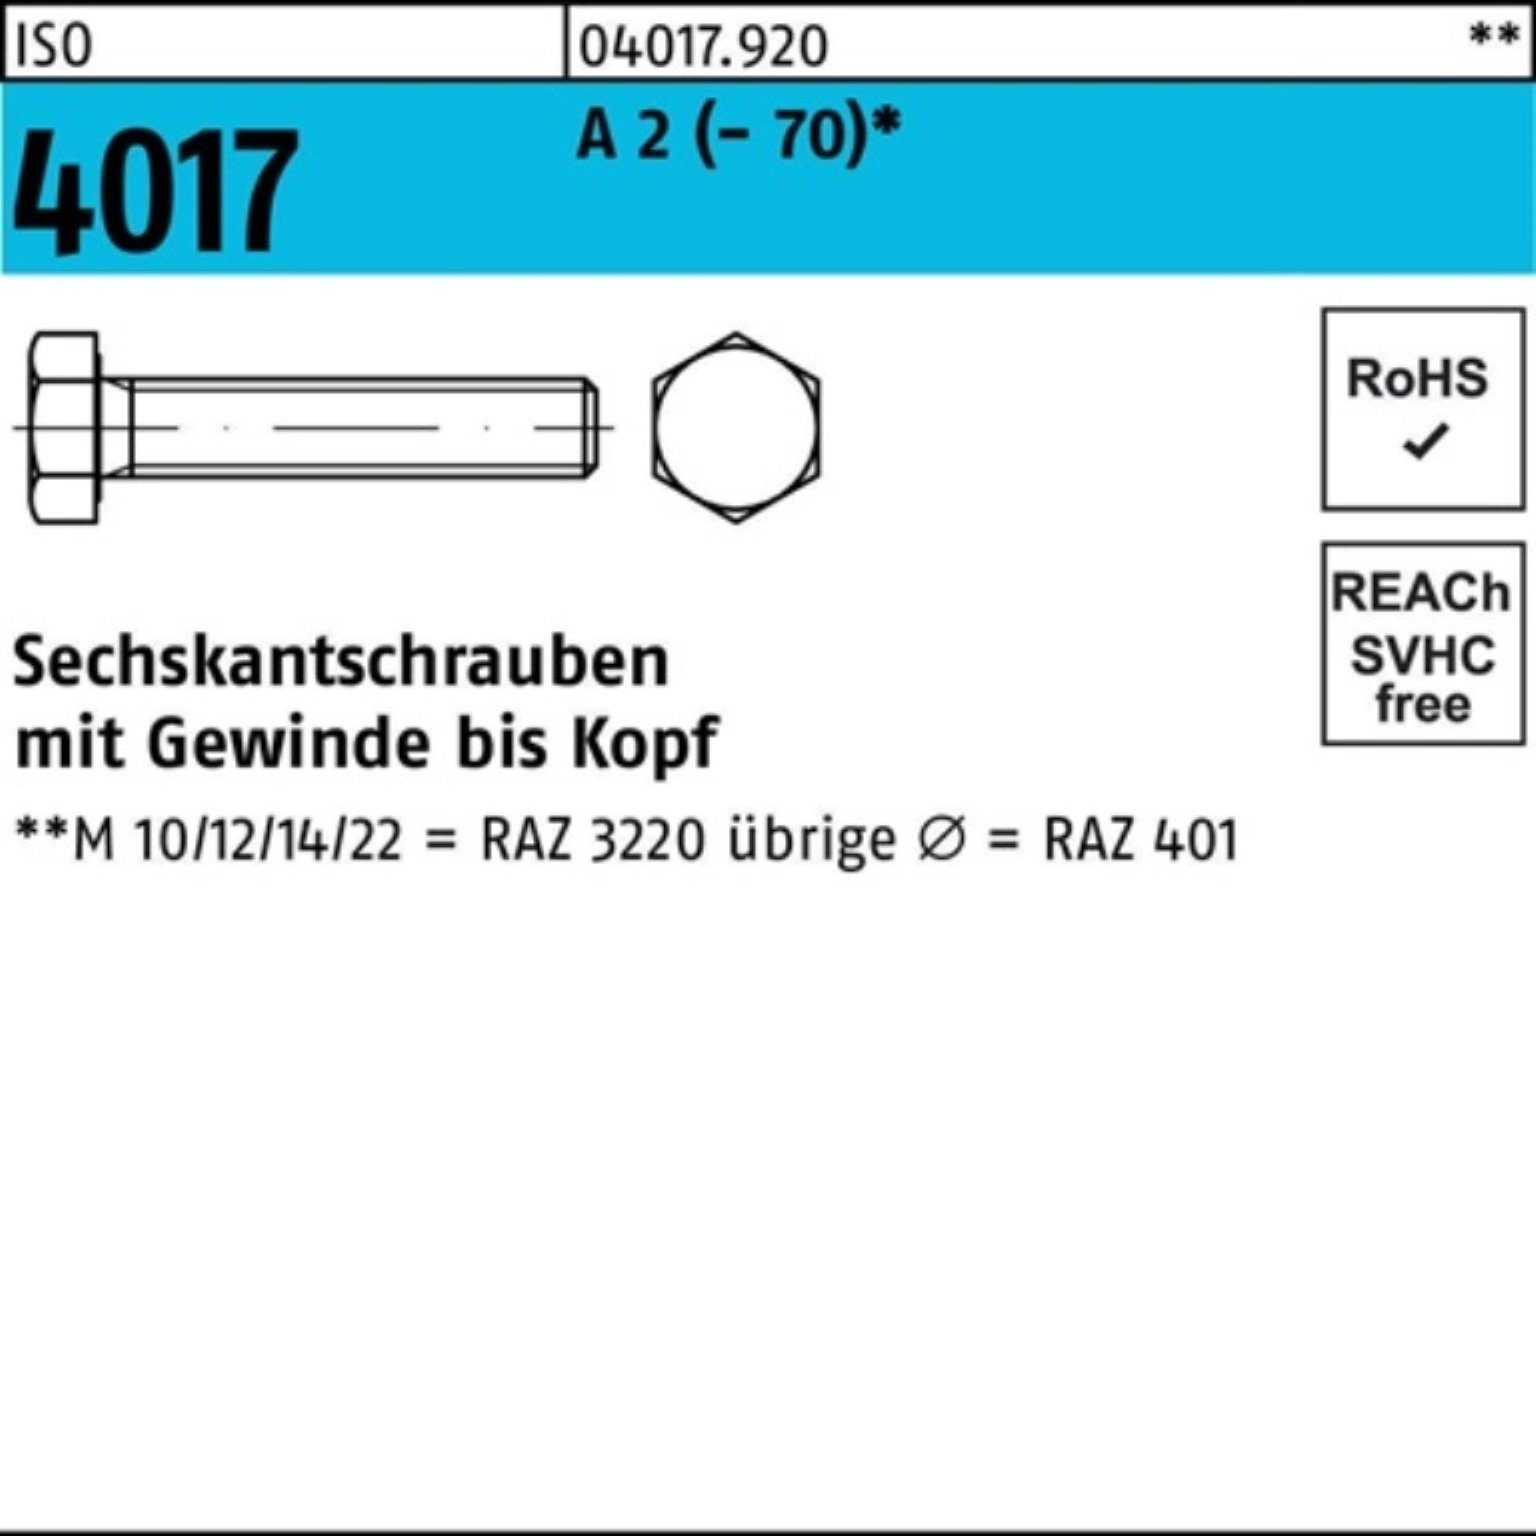 Stück Pack VG ISO I Sechskantschraube 100er 55 Sechskantschraube A 2 4017 Bufab (70) M22x 1